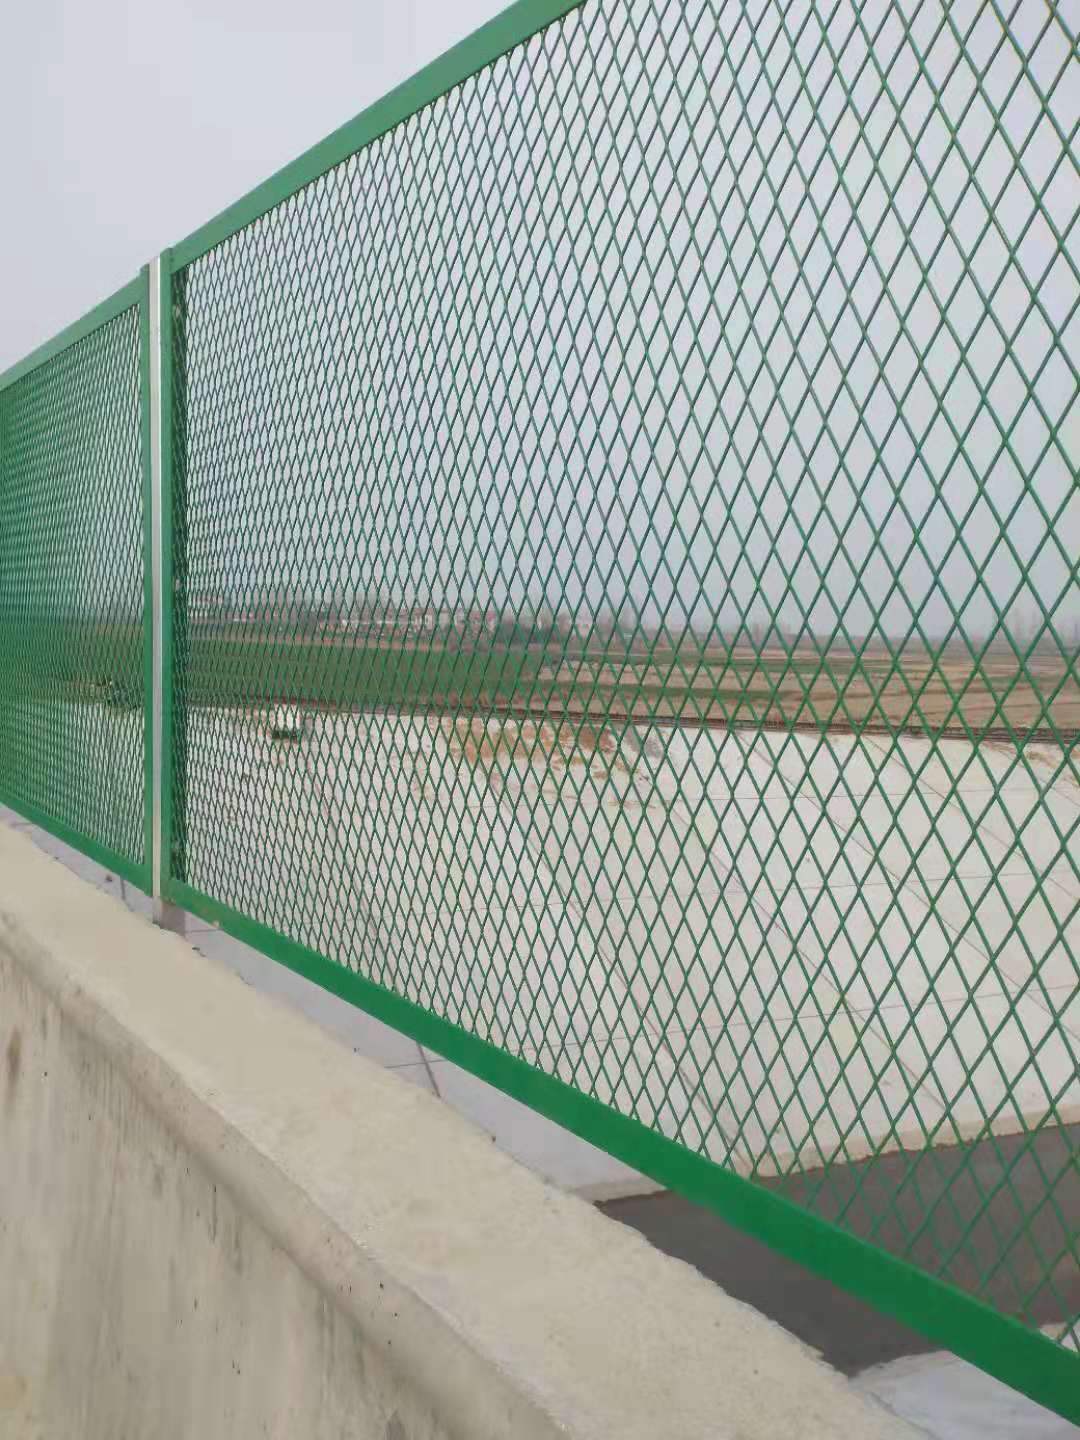 镀锌喷塑 组装球场围网 勾花围栏围网 没有中间商